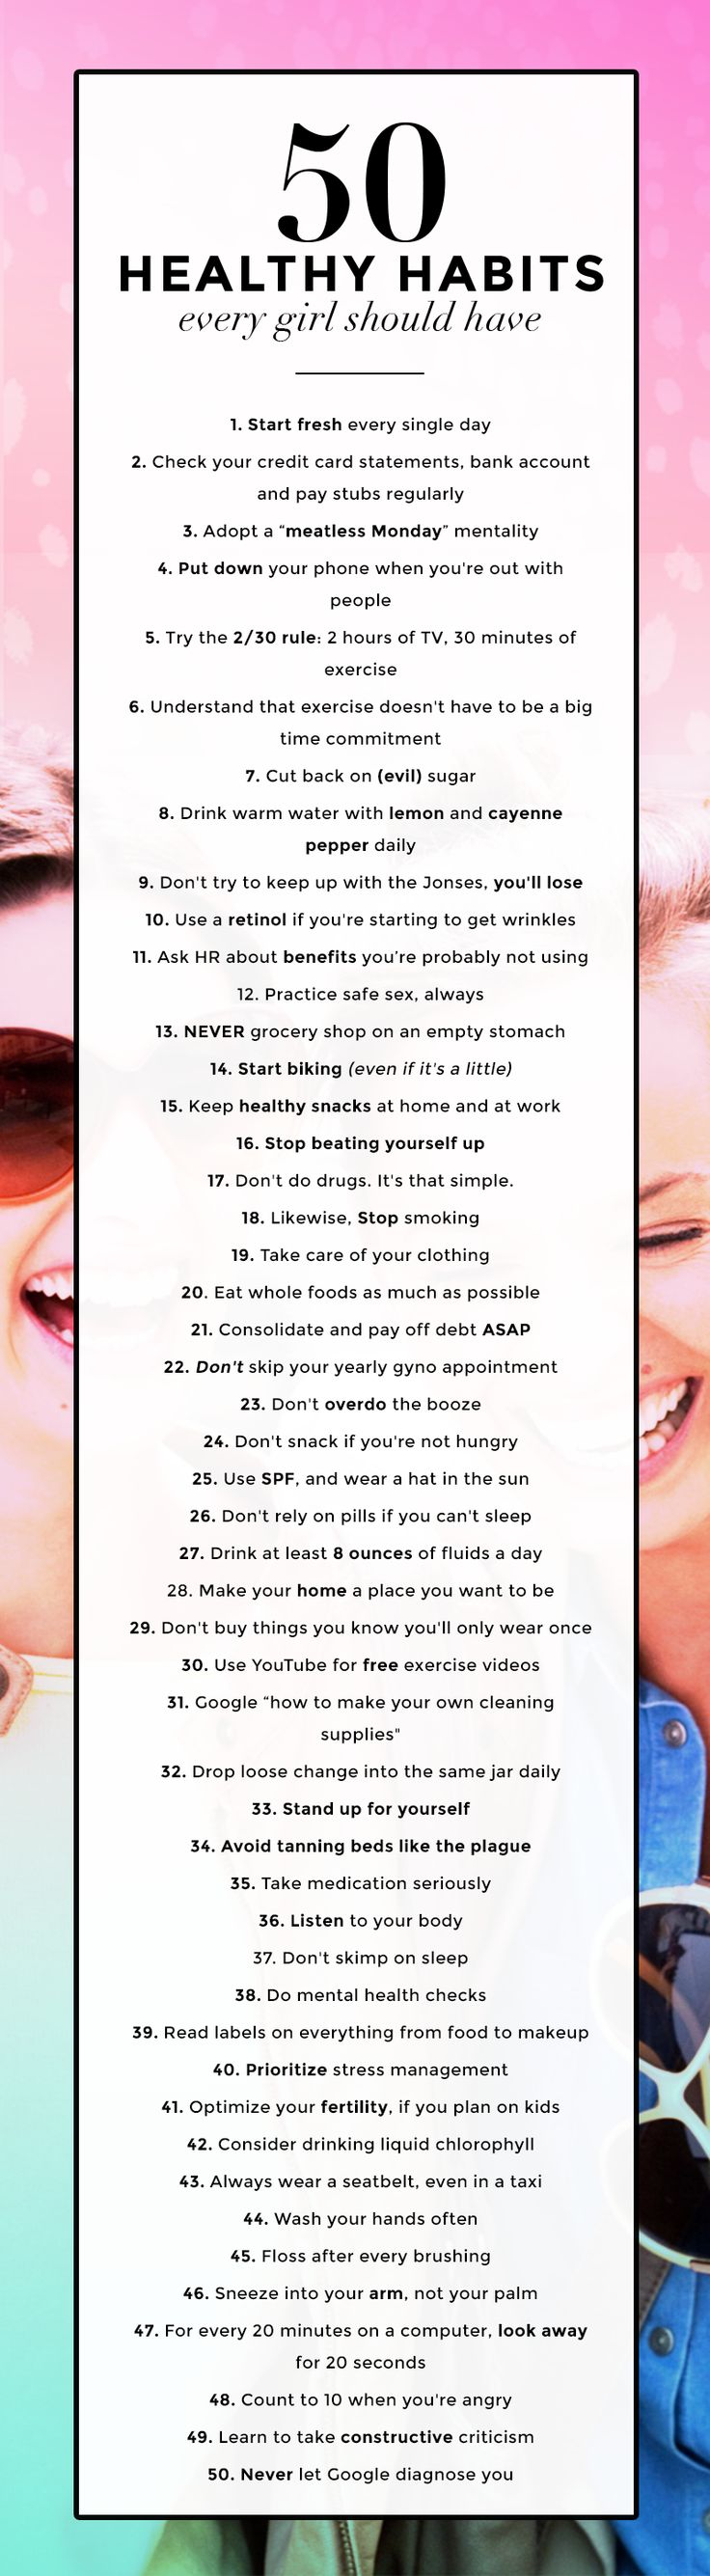 50 Healthy Habits